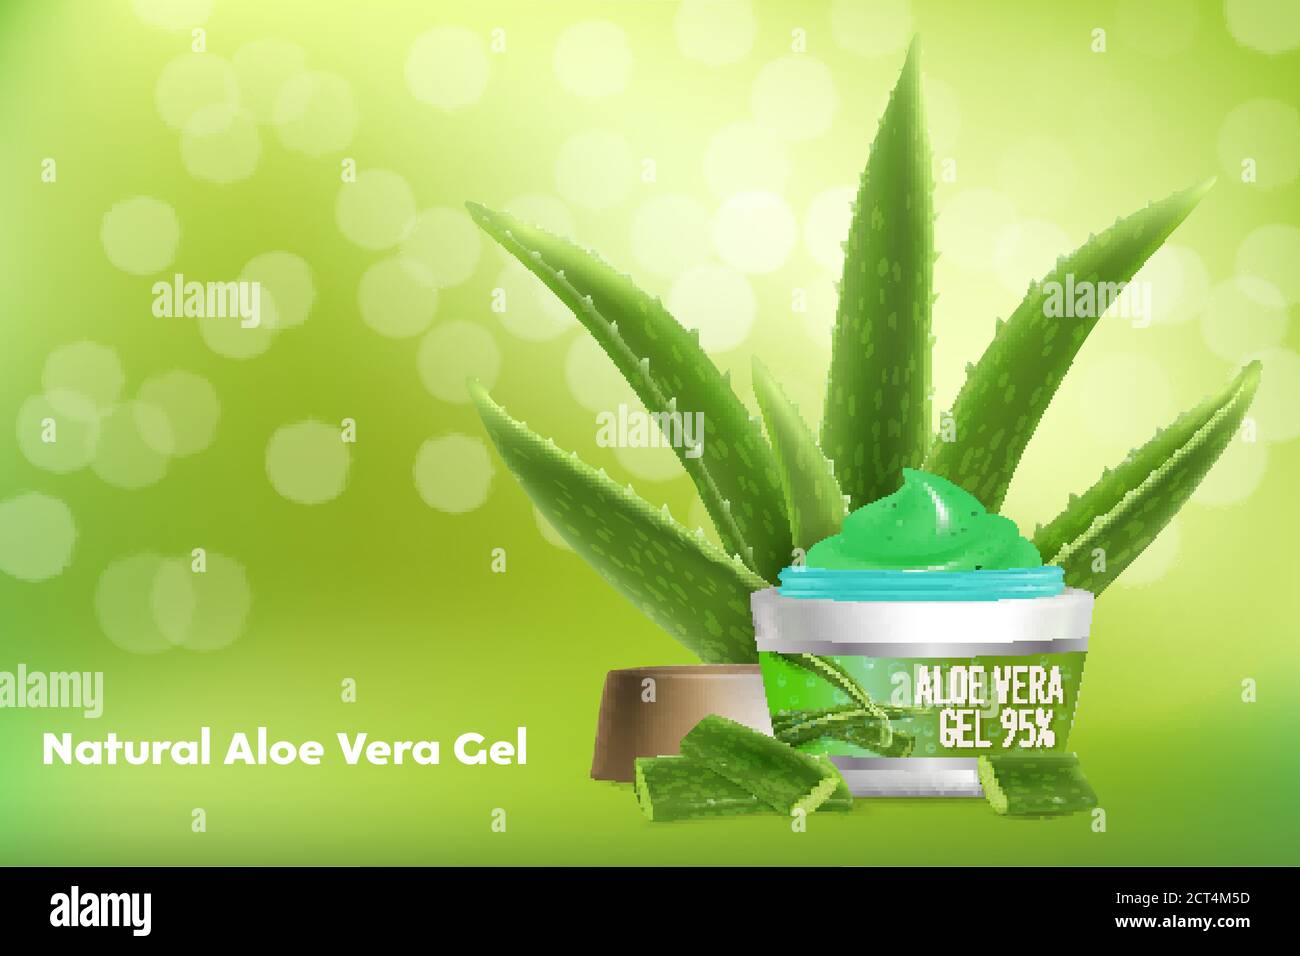 Aloe vera gel vector publicidad poster plantilla Imagen Vector de stock -  Alamy